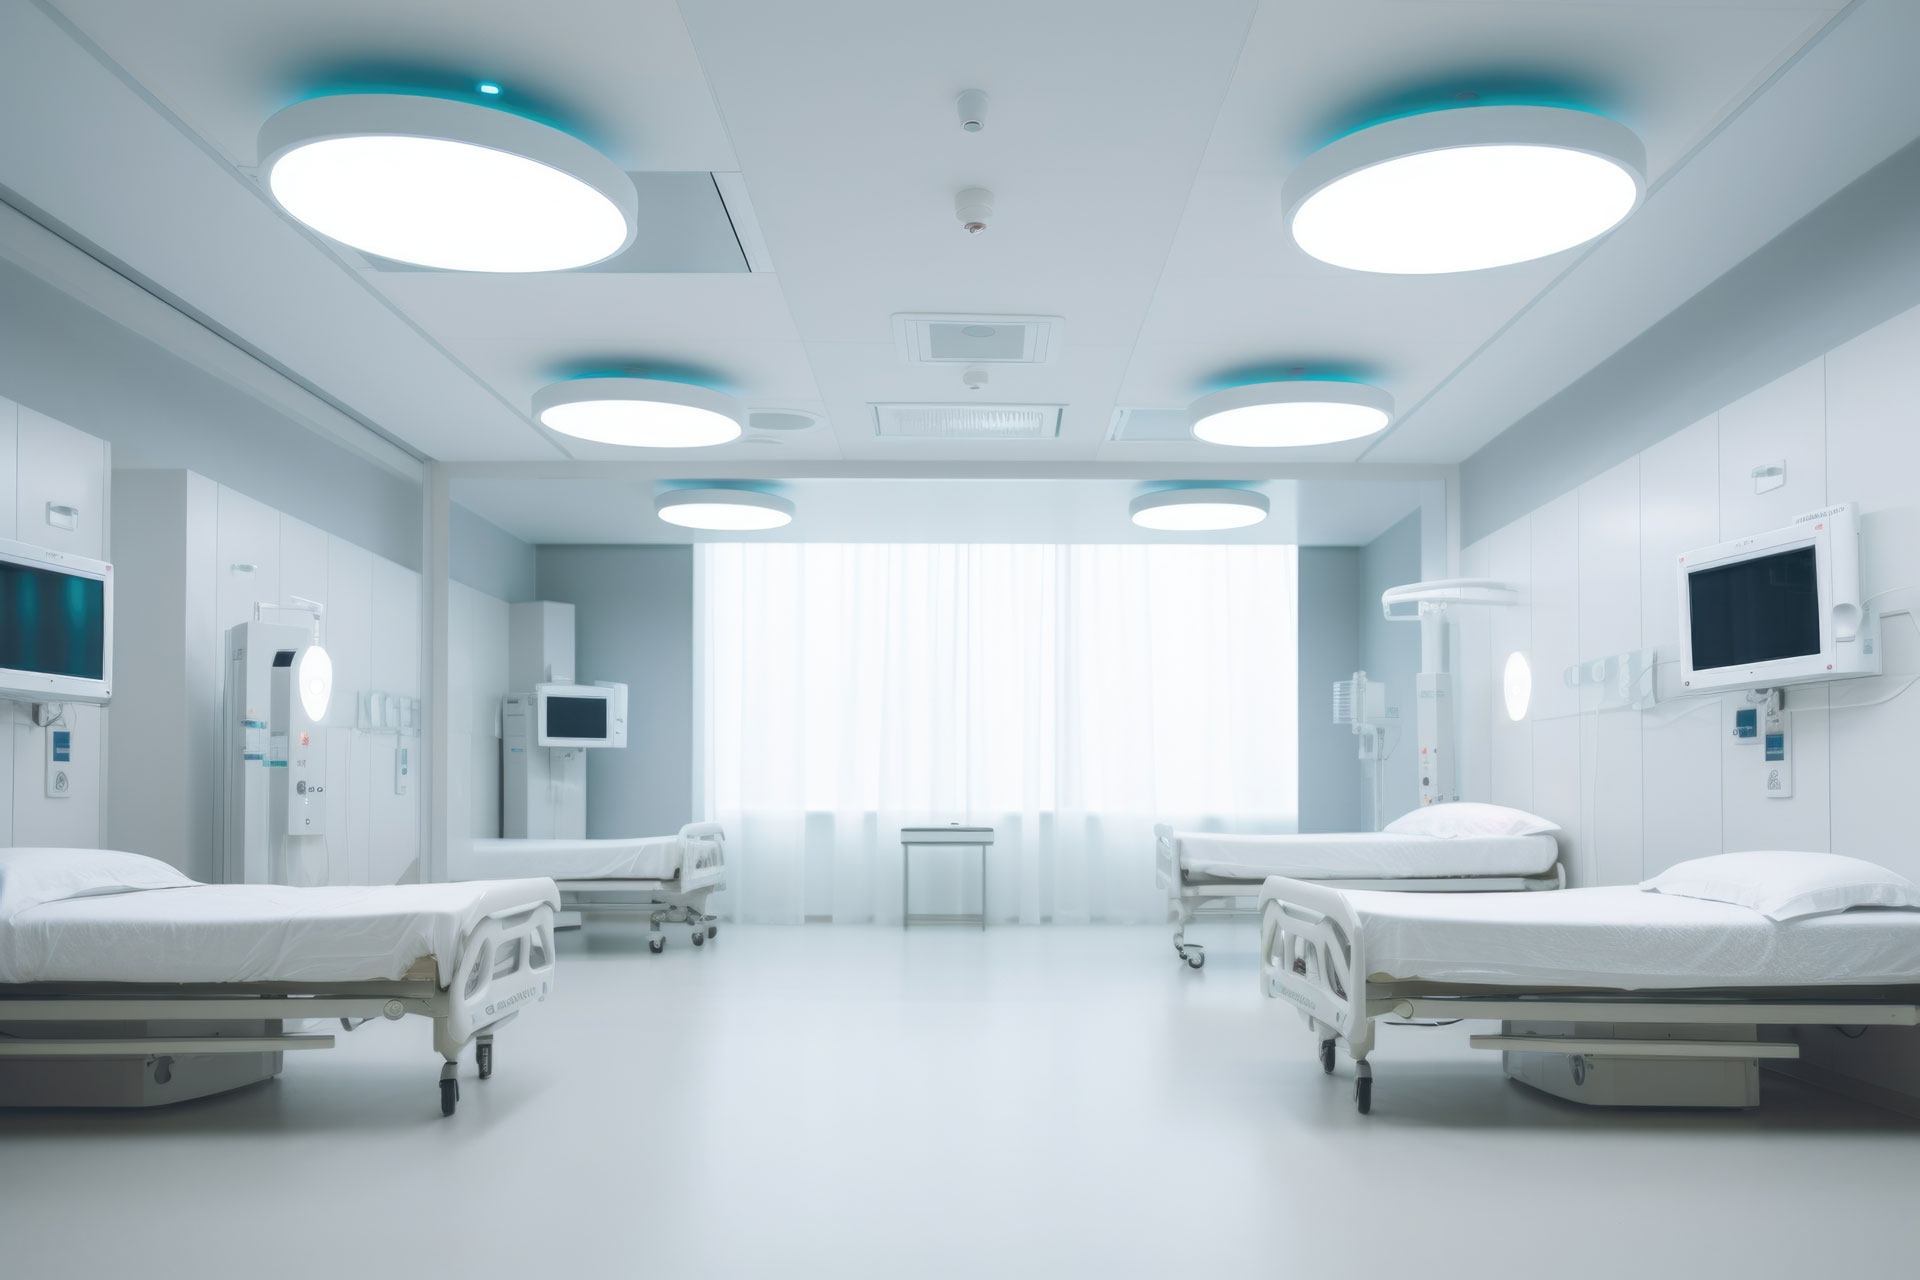 Ein Zimmer mit großen Leuchten und 4 leeren Krankenhausbetten